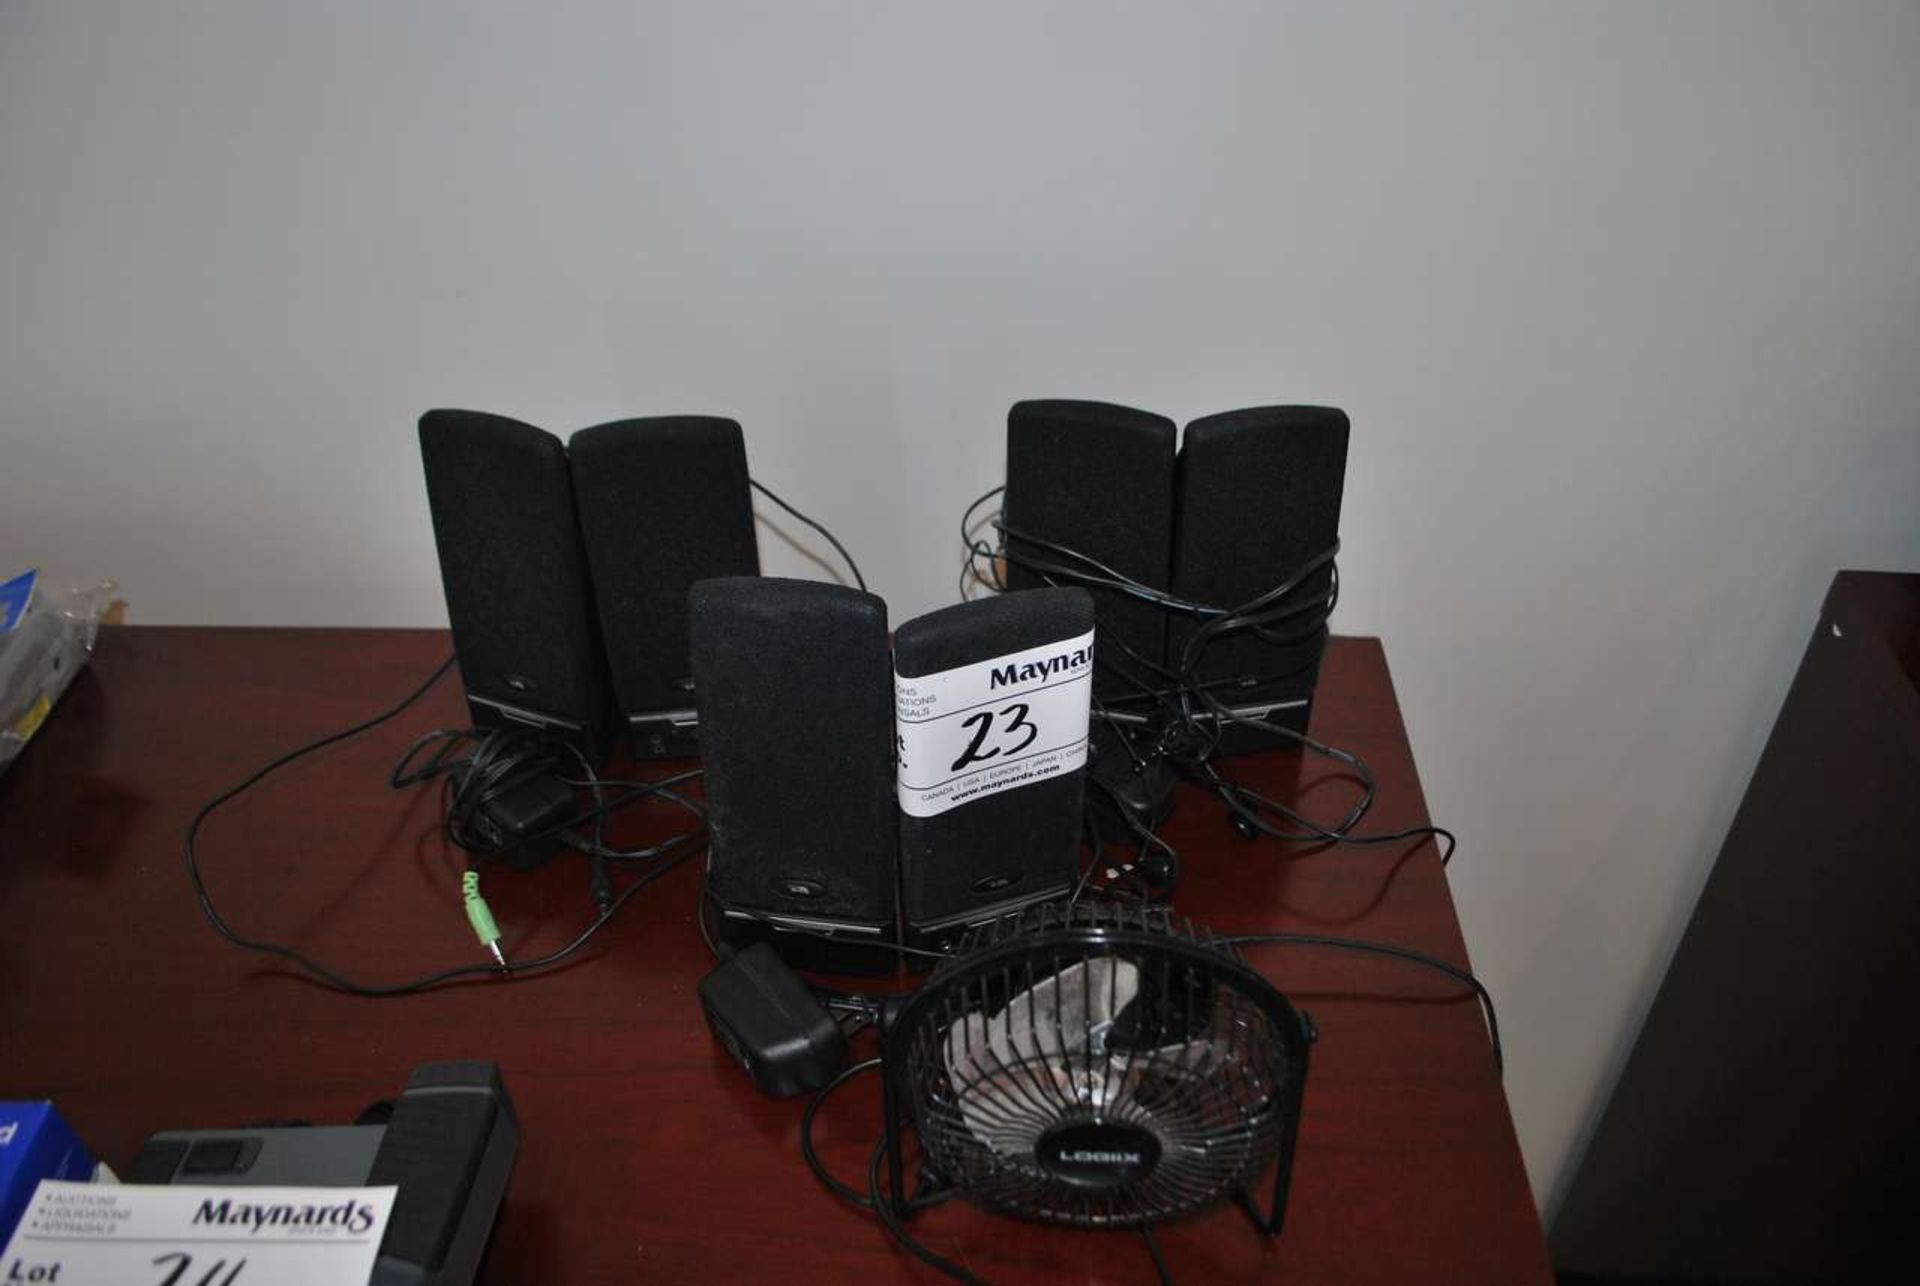 Assorted computer speakers